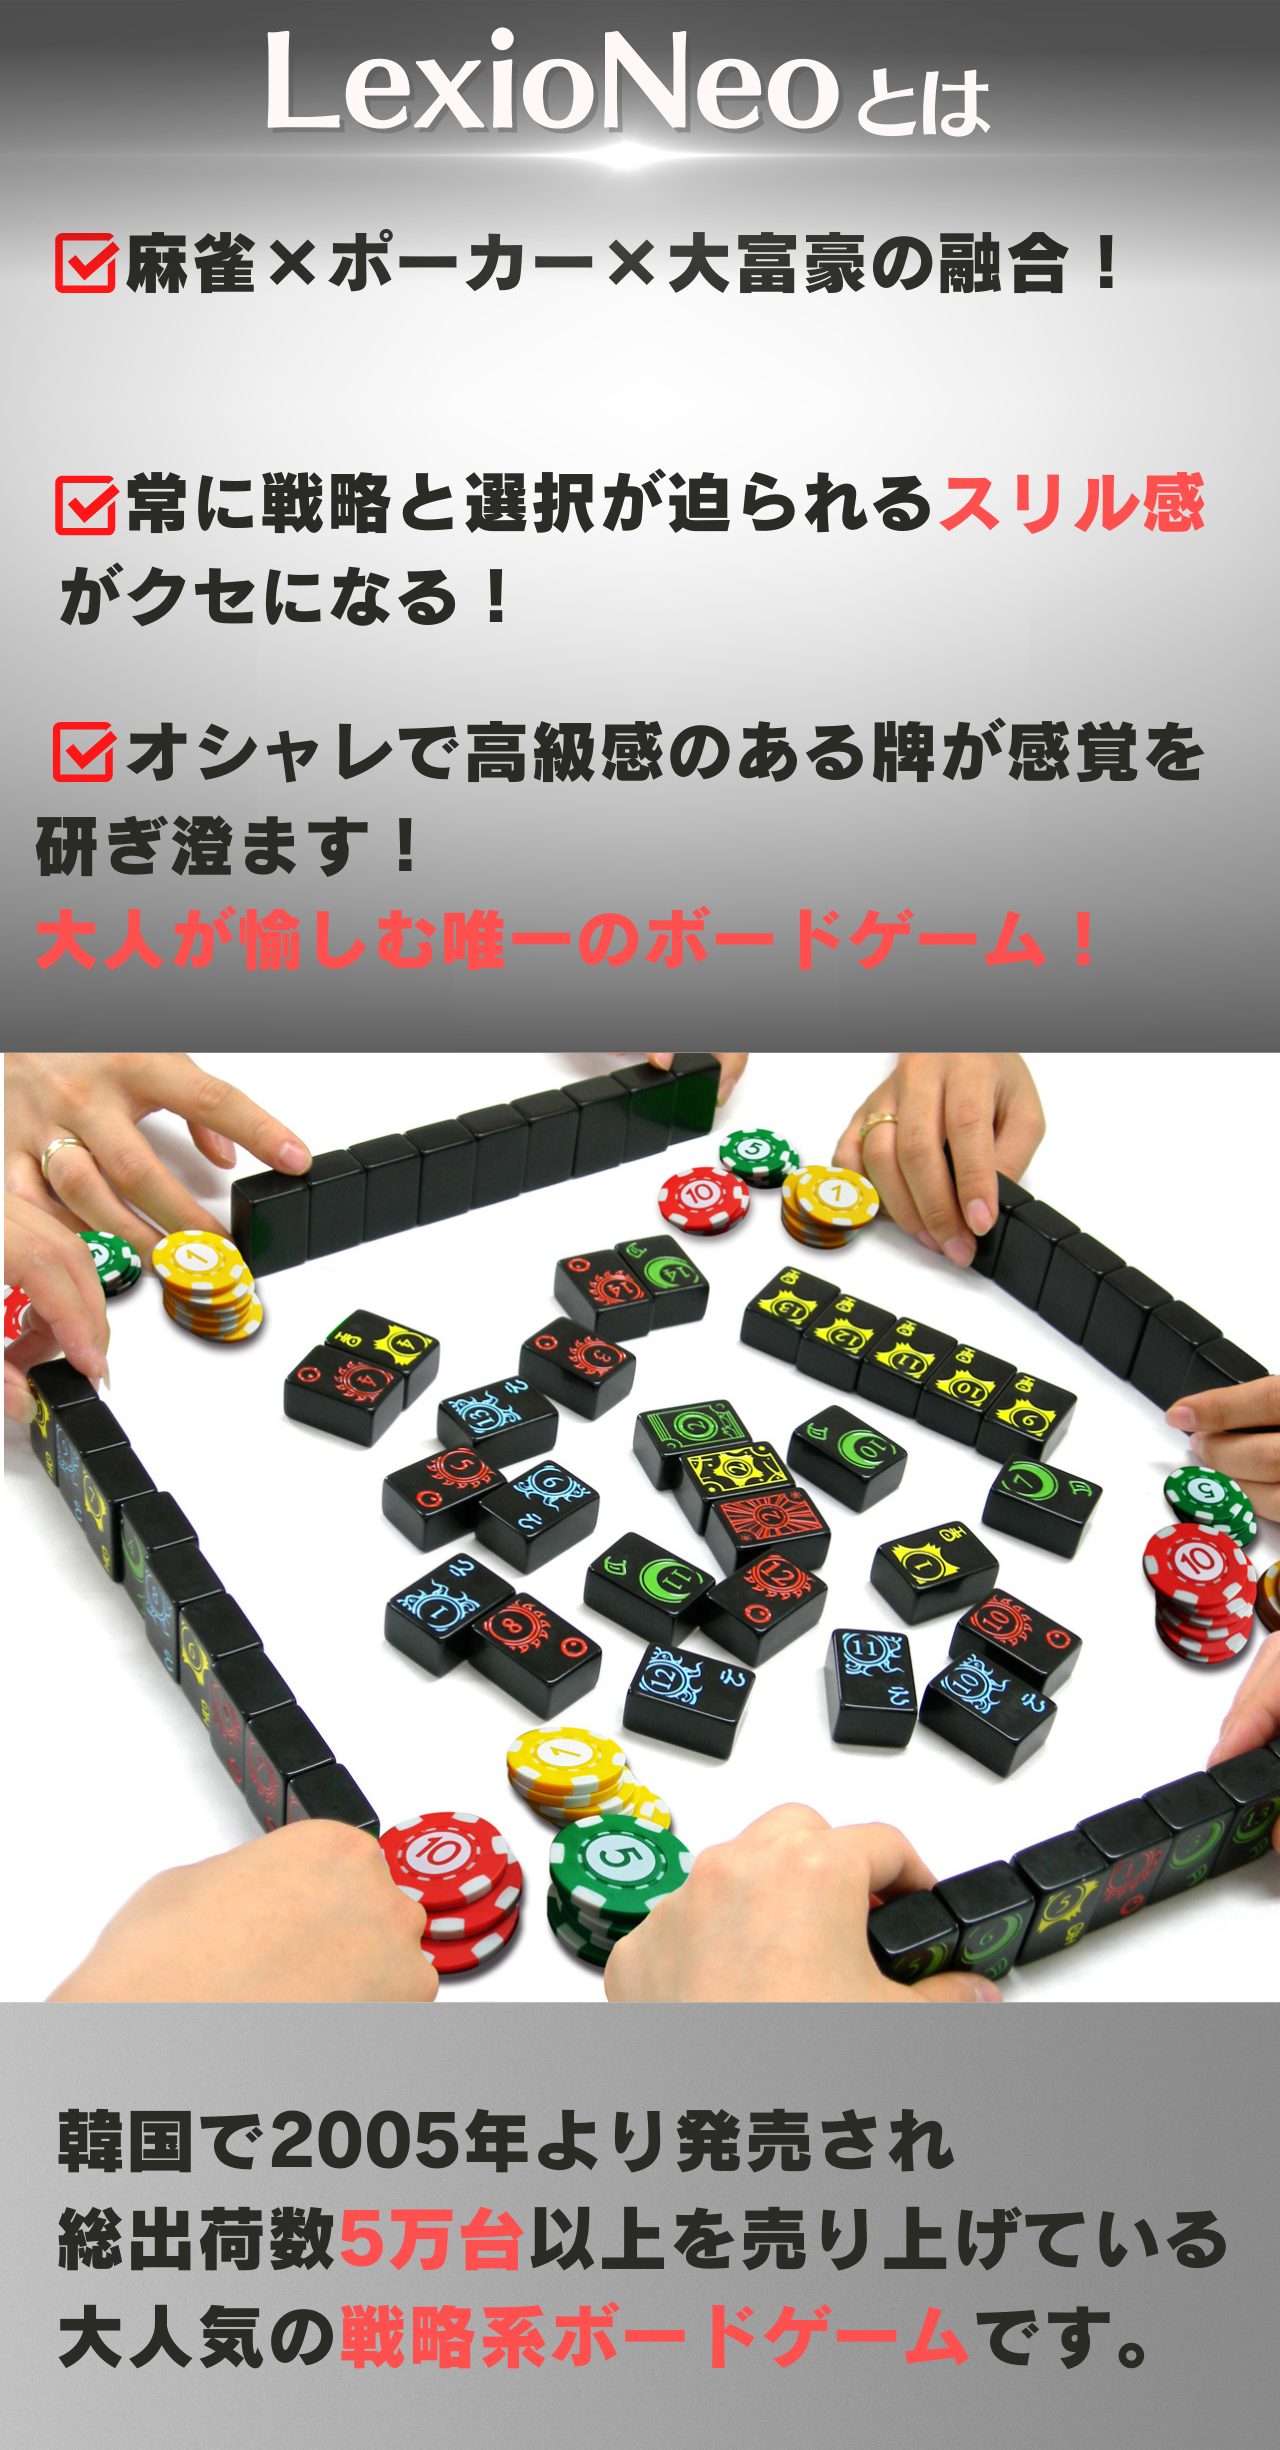 ニューレキシオ lexio ボードゲーム 日本語説明書付き - その他